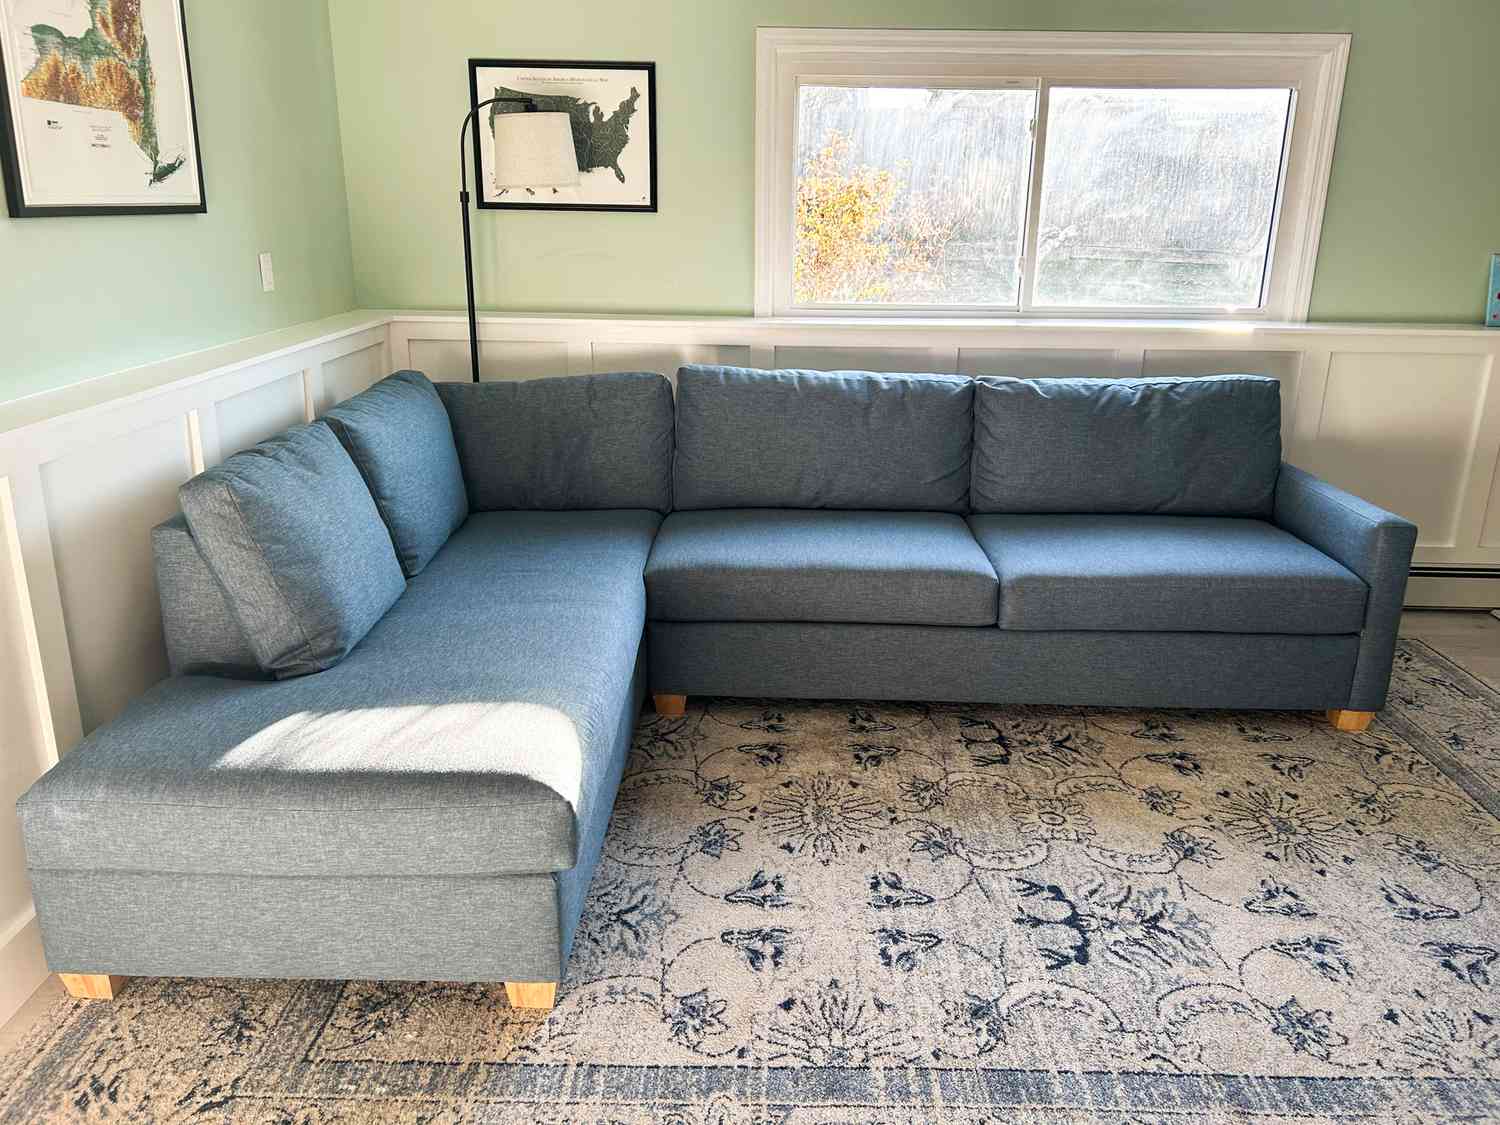 How Long Should A Good Sofa Last